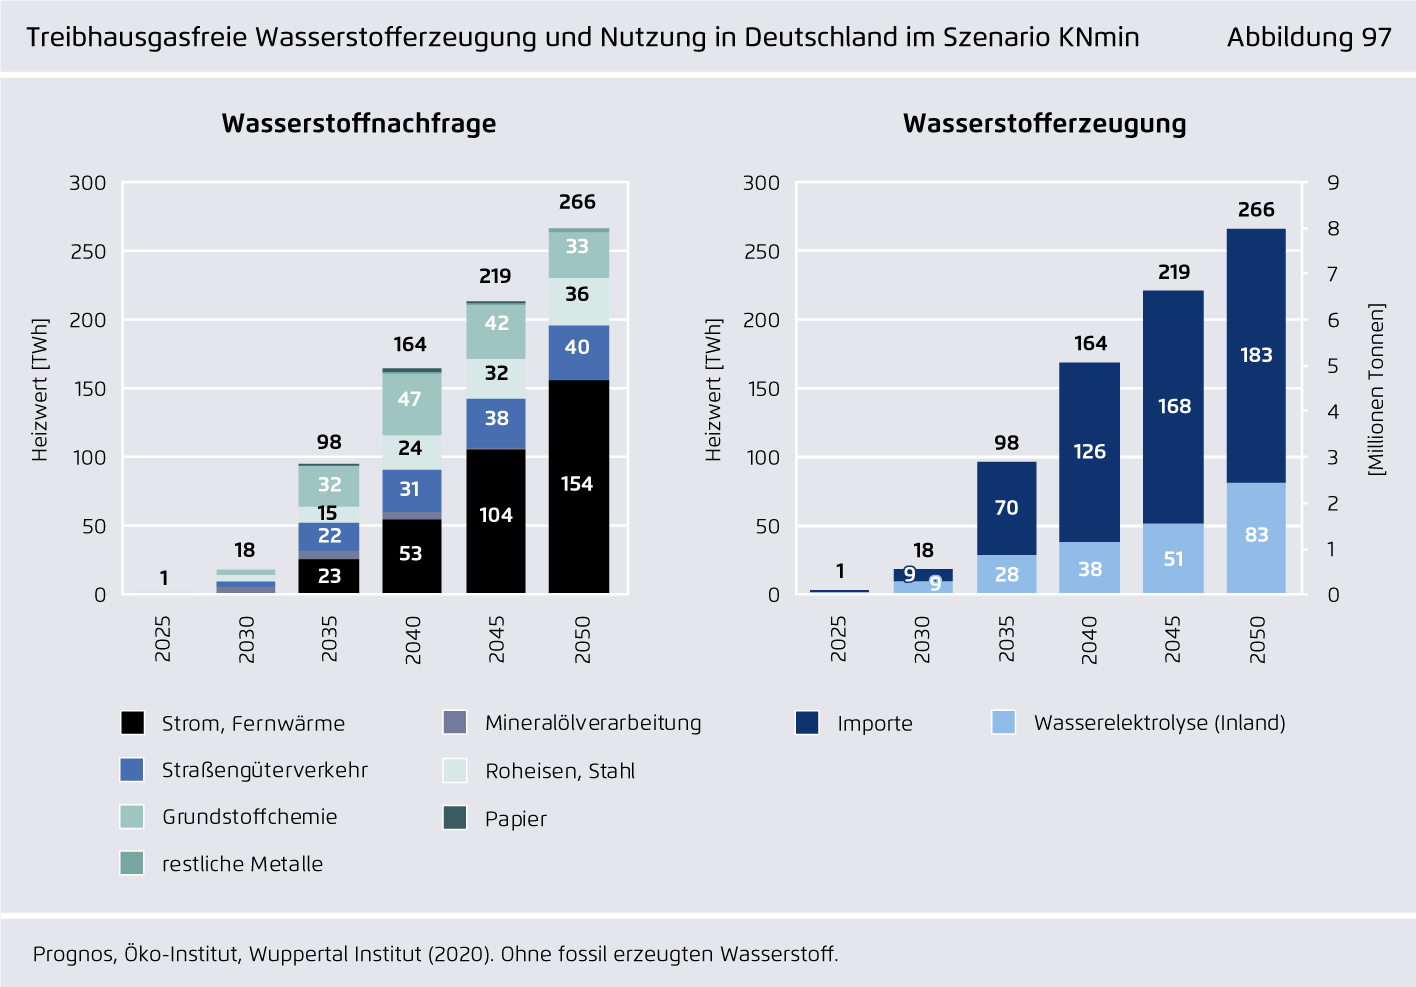 Preview for Treibhausgasfreie Wasserstofferzeugung und Nutzung in Deutschland im Szenario KNmin